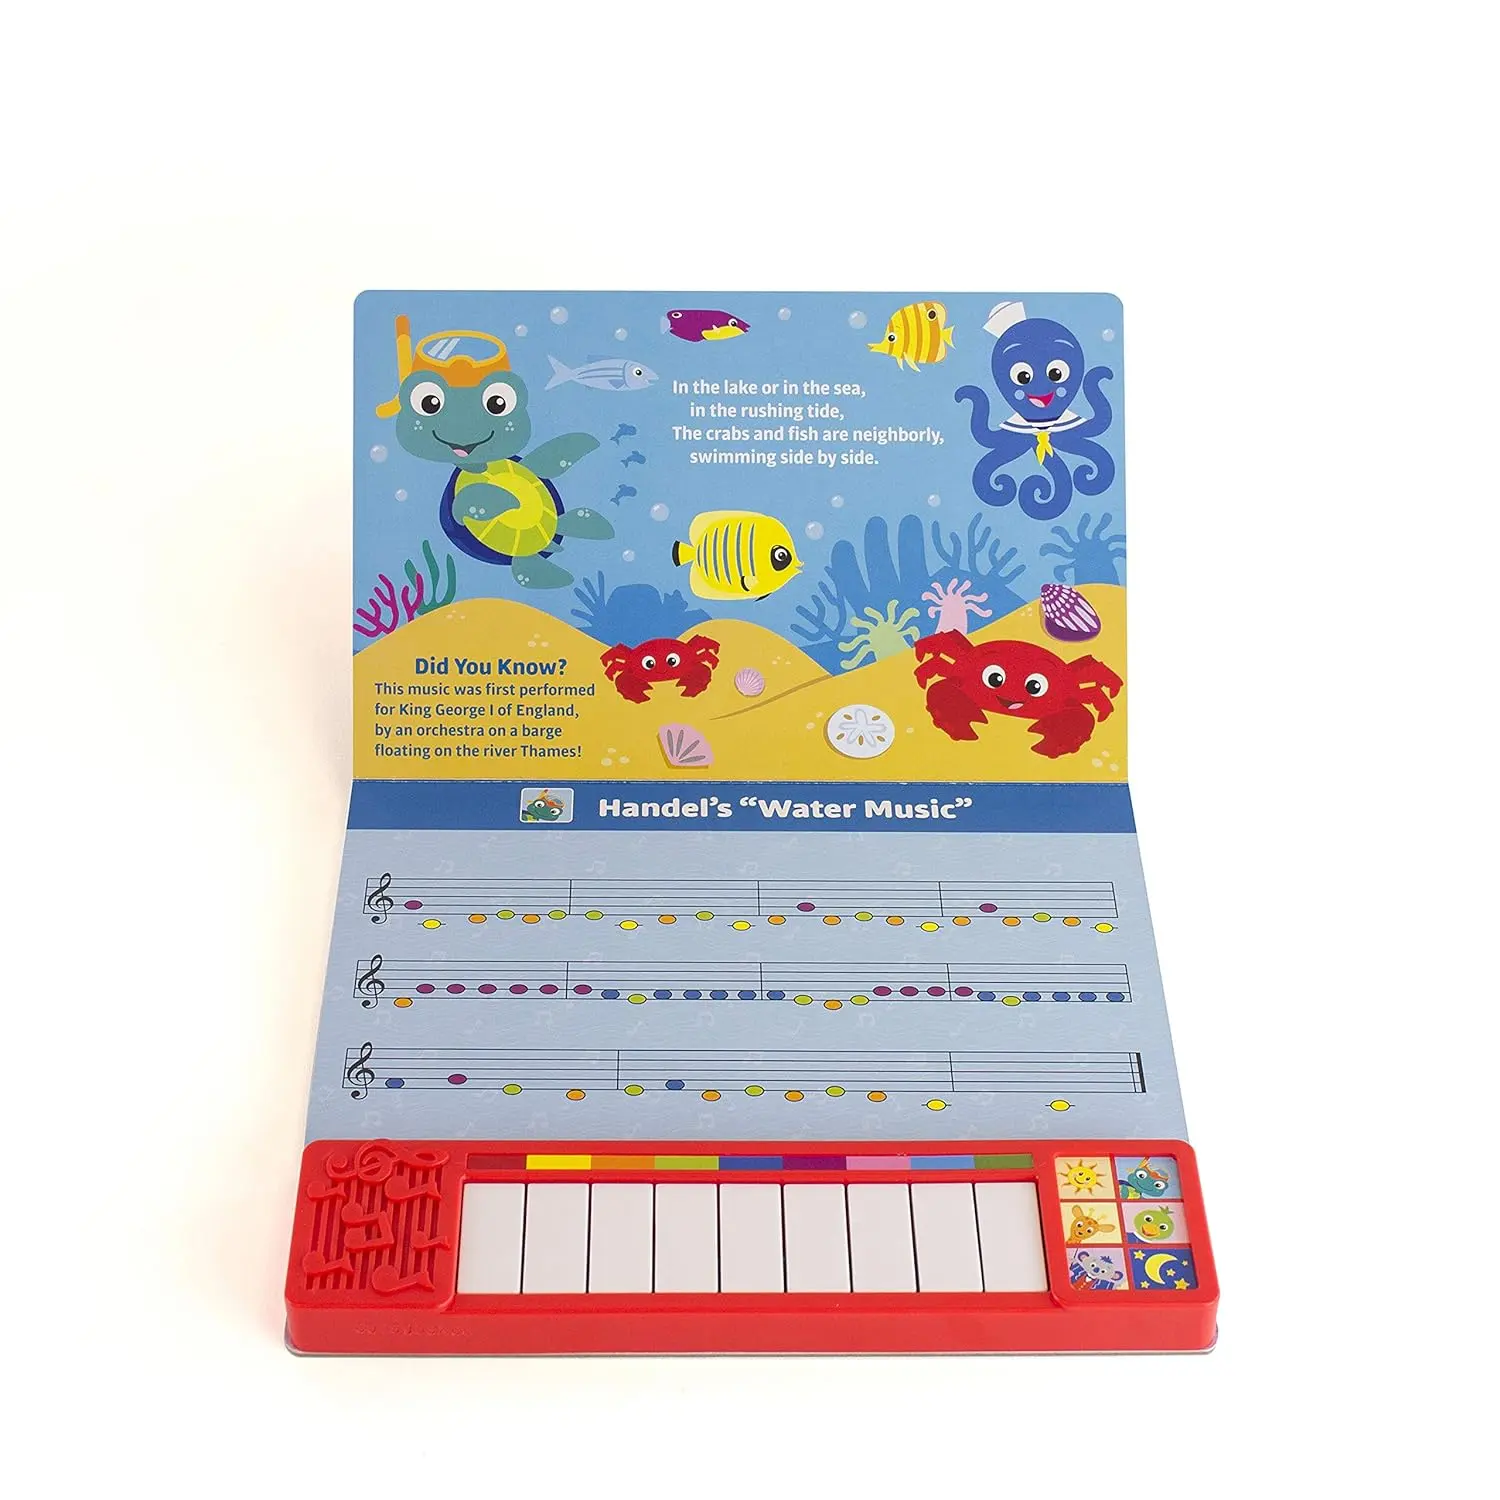 Stampa di libri sonori per bambini con tastiera registrabile con audiolibro registrabile pulsanti musicali personalizzati per l'apprendimento precoce del bambino